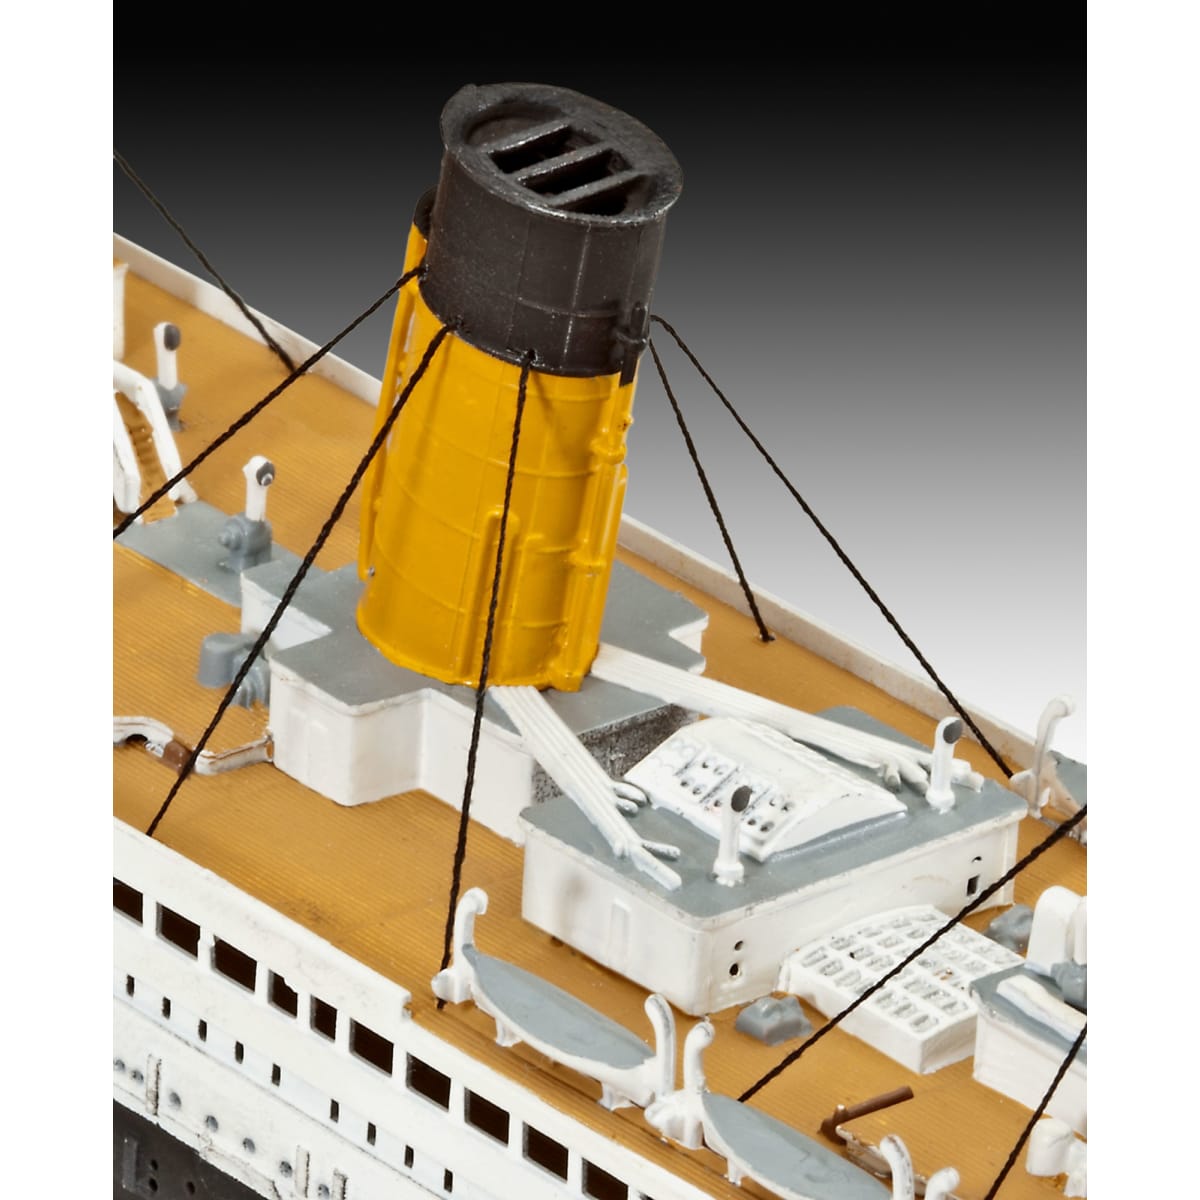 Revell . Titanic 1:700 pienoismalli  verkkokauppa